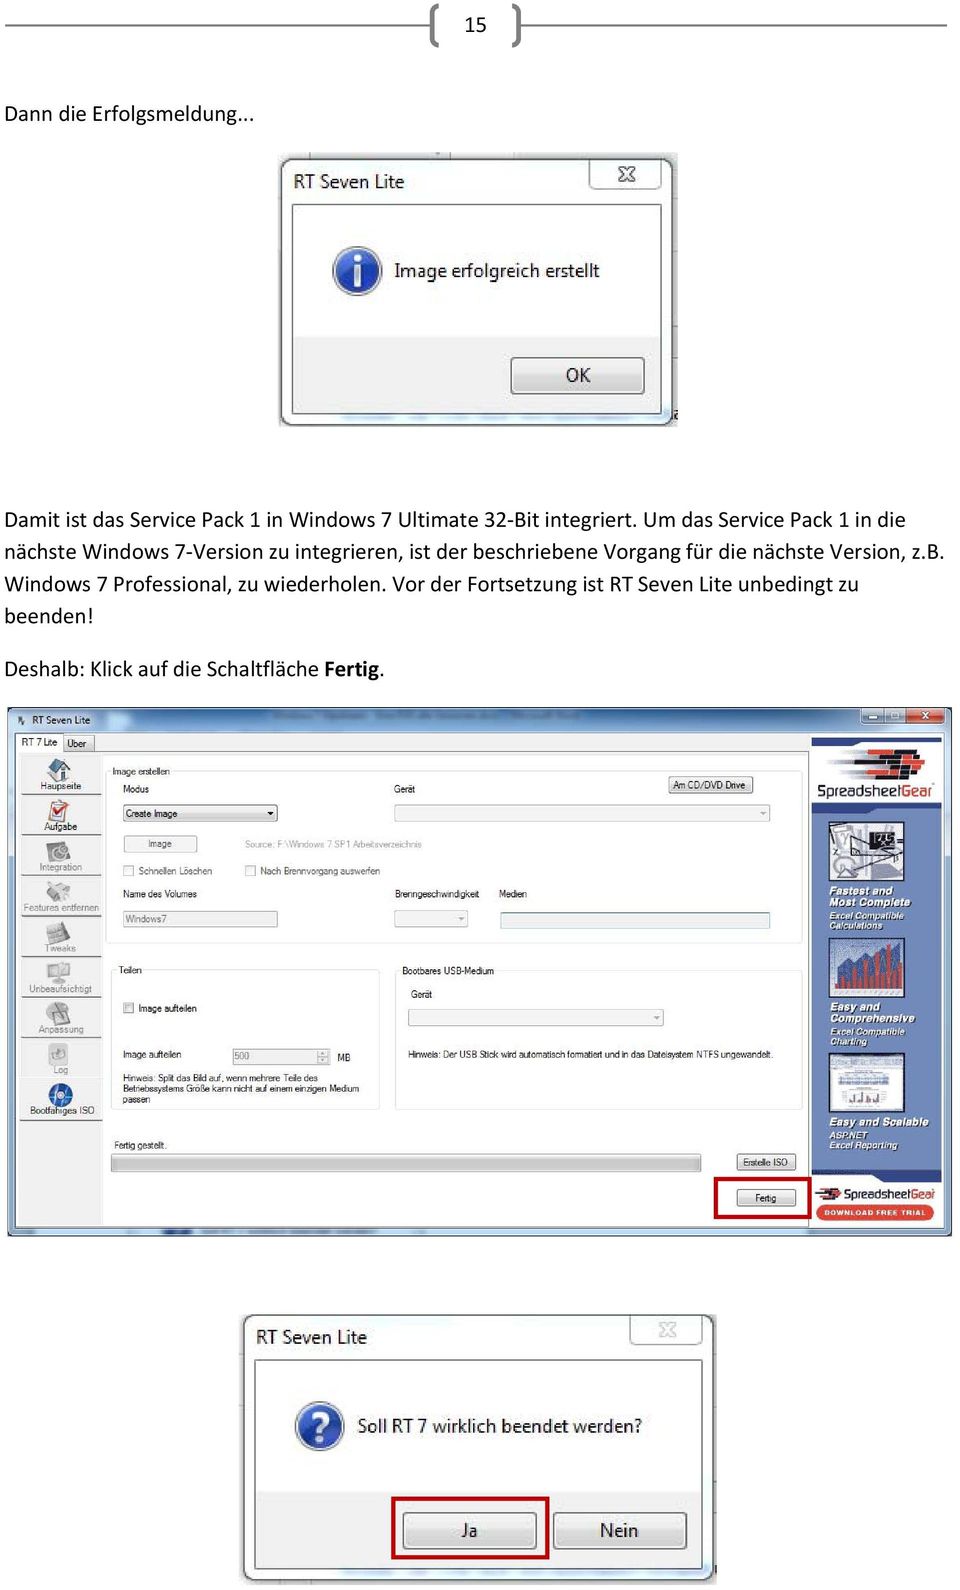 Um das Service Pack 1 in die nächste Windows 7 Version zu integrieren, ist der beschriebene